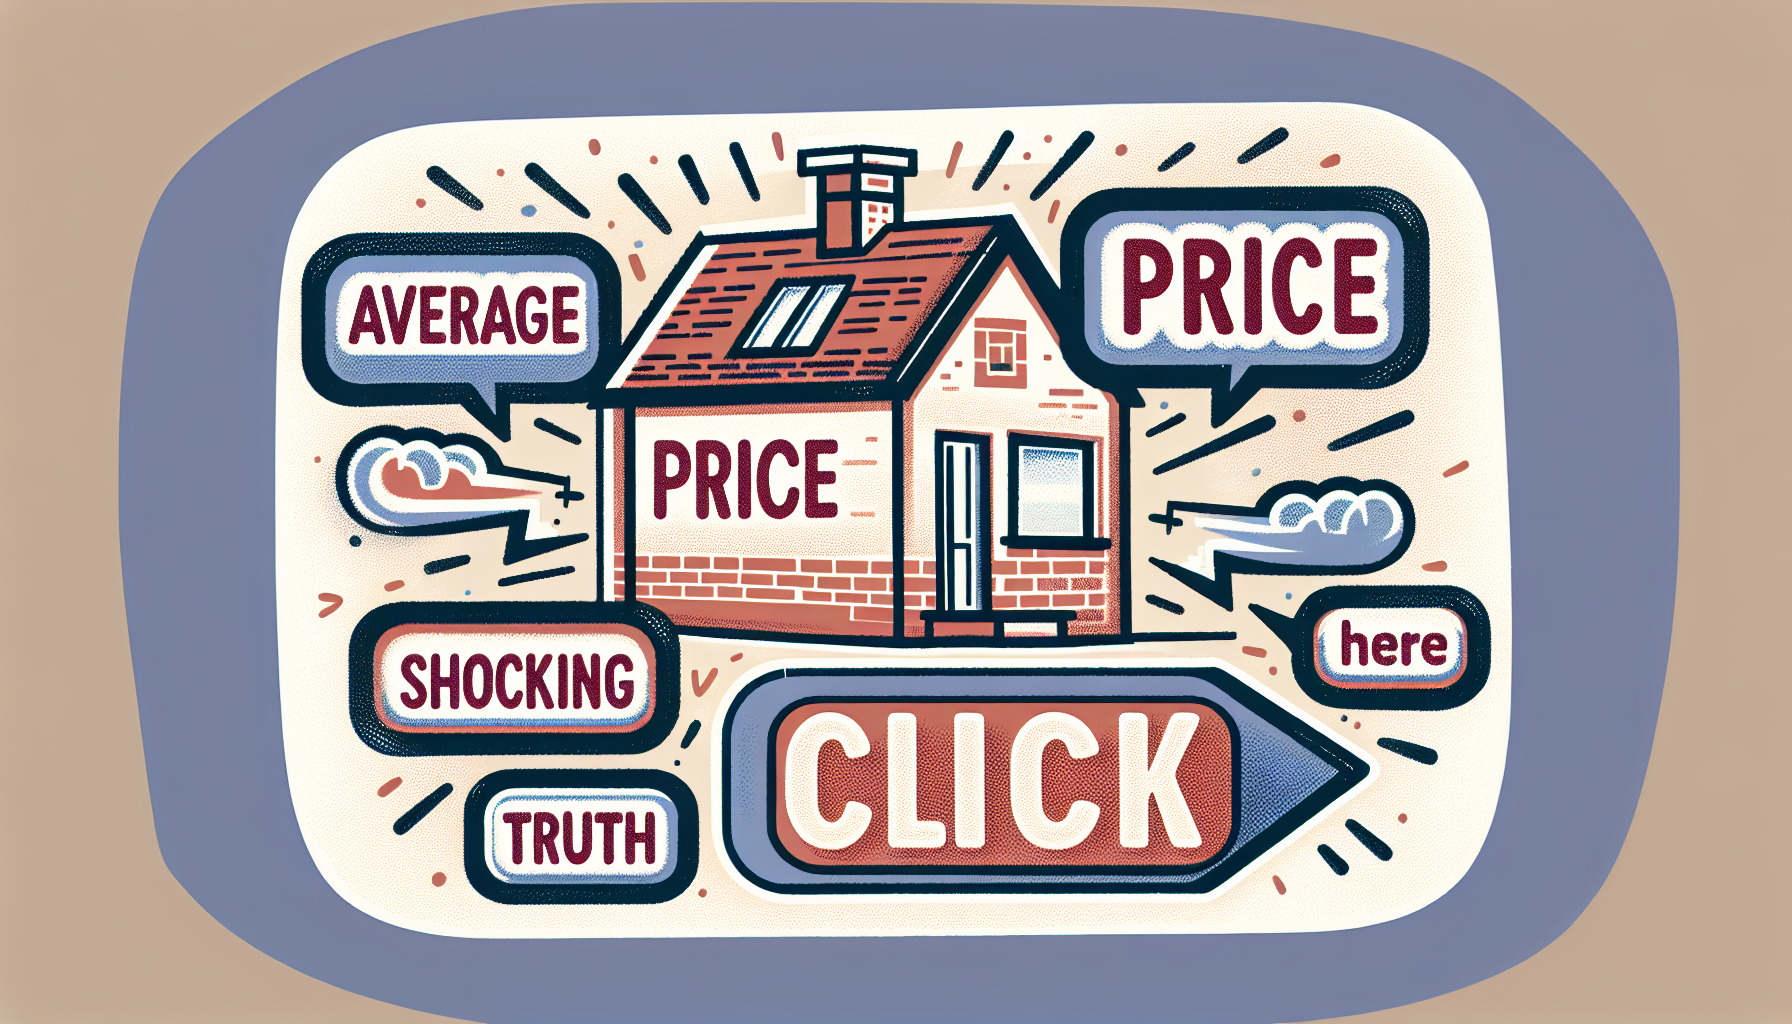 découvrez tout ce que vous devez savoir sur le prix moyen d'une maison et faites le meilleur choix pour votre avenir. consultez notre guide complet maintenant !